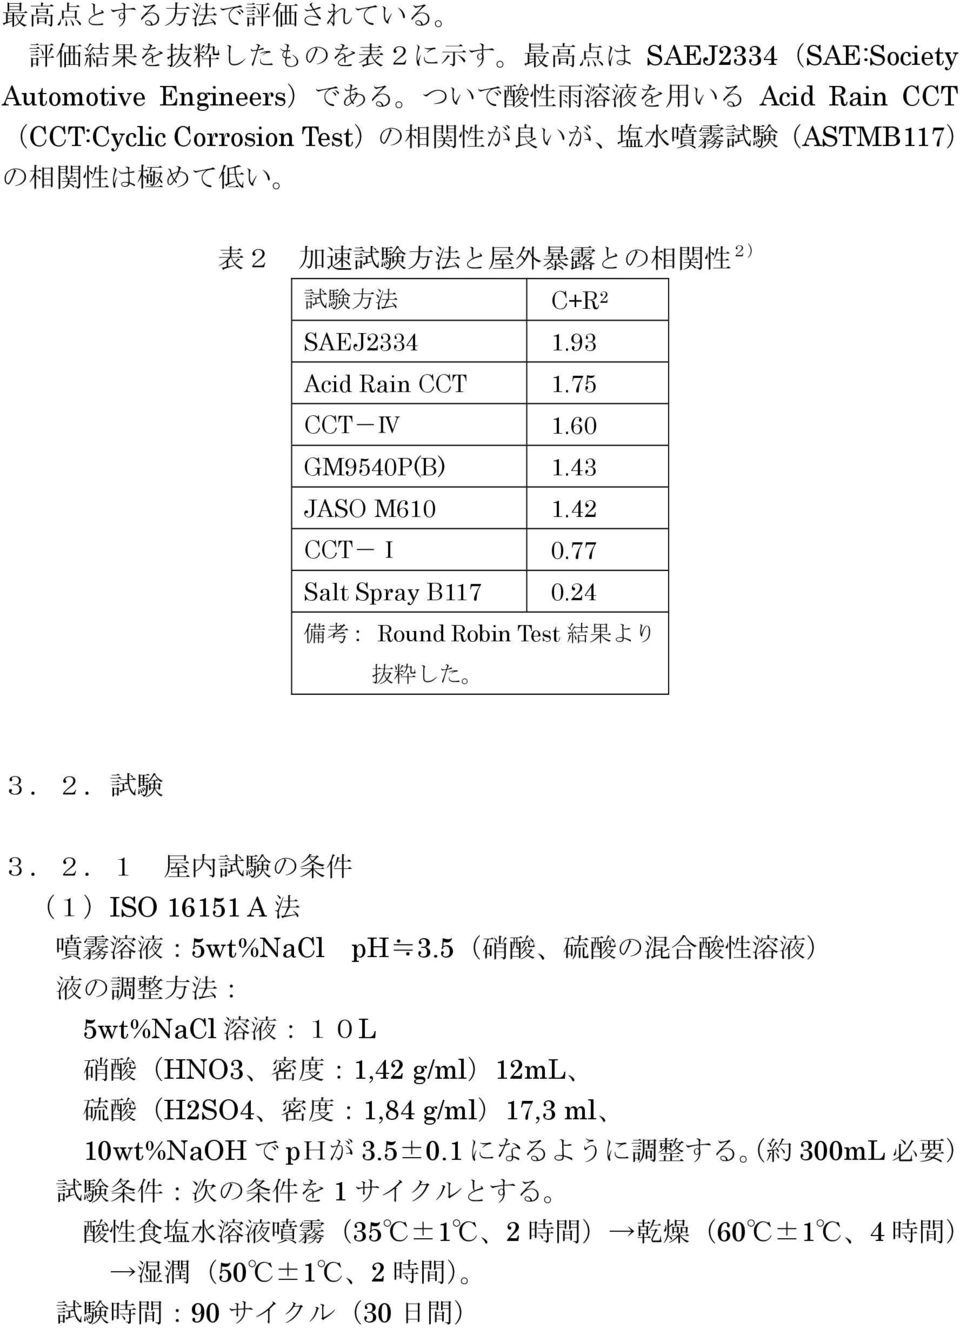 24 備 考 : Round Robin Test 結 果 より 抜 粋 した 3.2. 試 験 3.2.1 屋 内 試 験 の 条 件 (1)ISO 16151 A 法 噴 霧 溶 液 :5wt%NaCl ph 3.